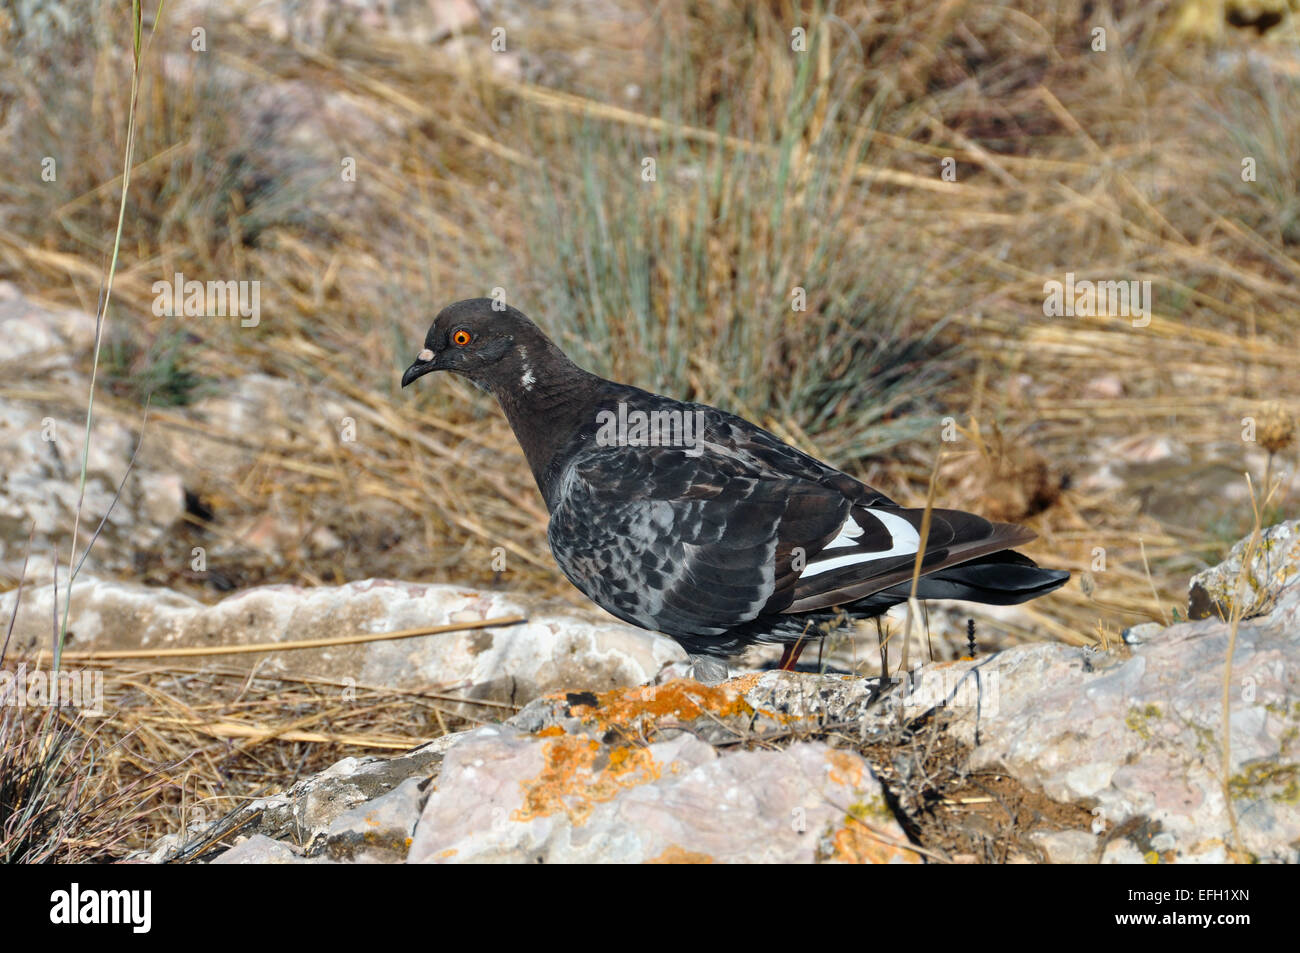 Black Rock pigeon colombe se nourrir sur le terrain. Banque D'Images